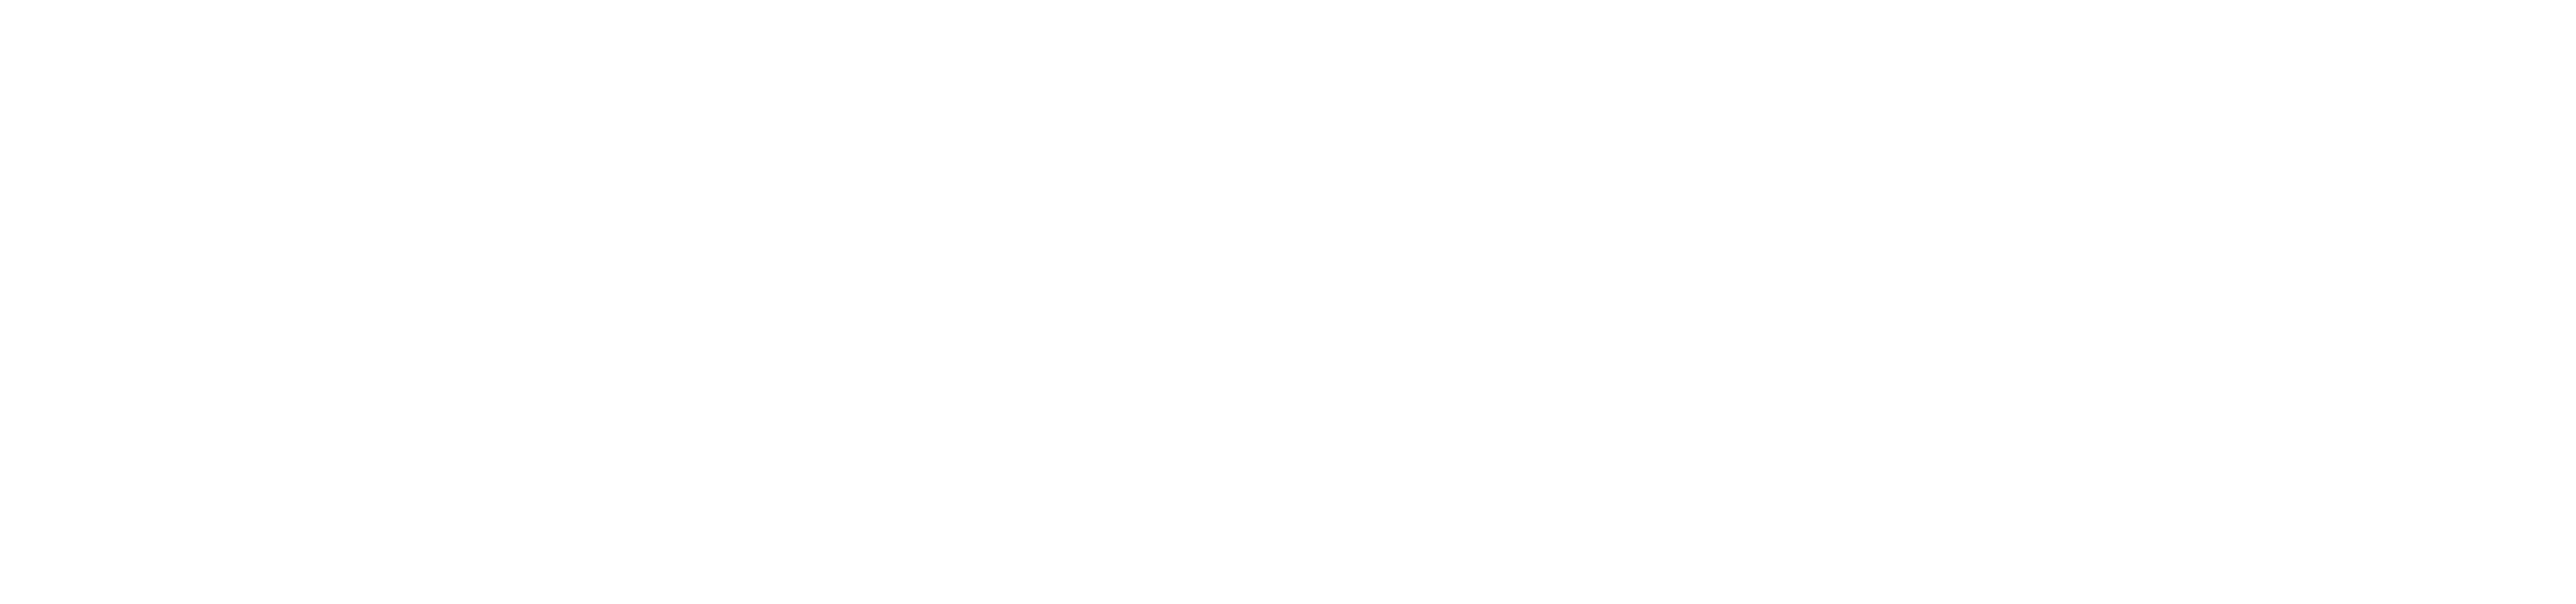 Surge Catalyst Logo